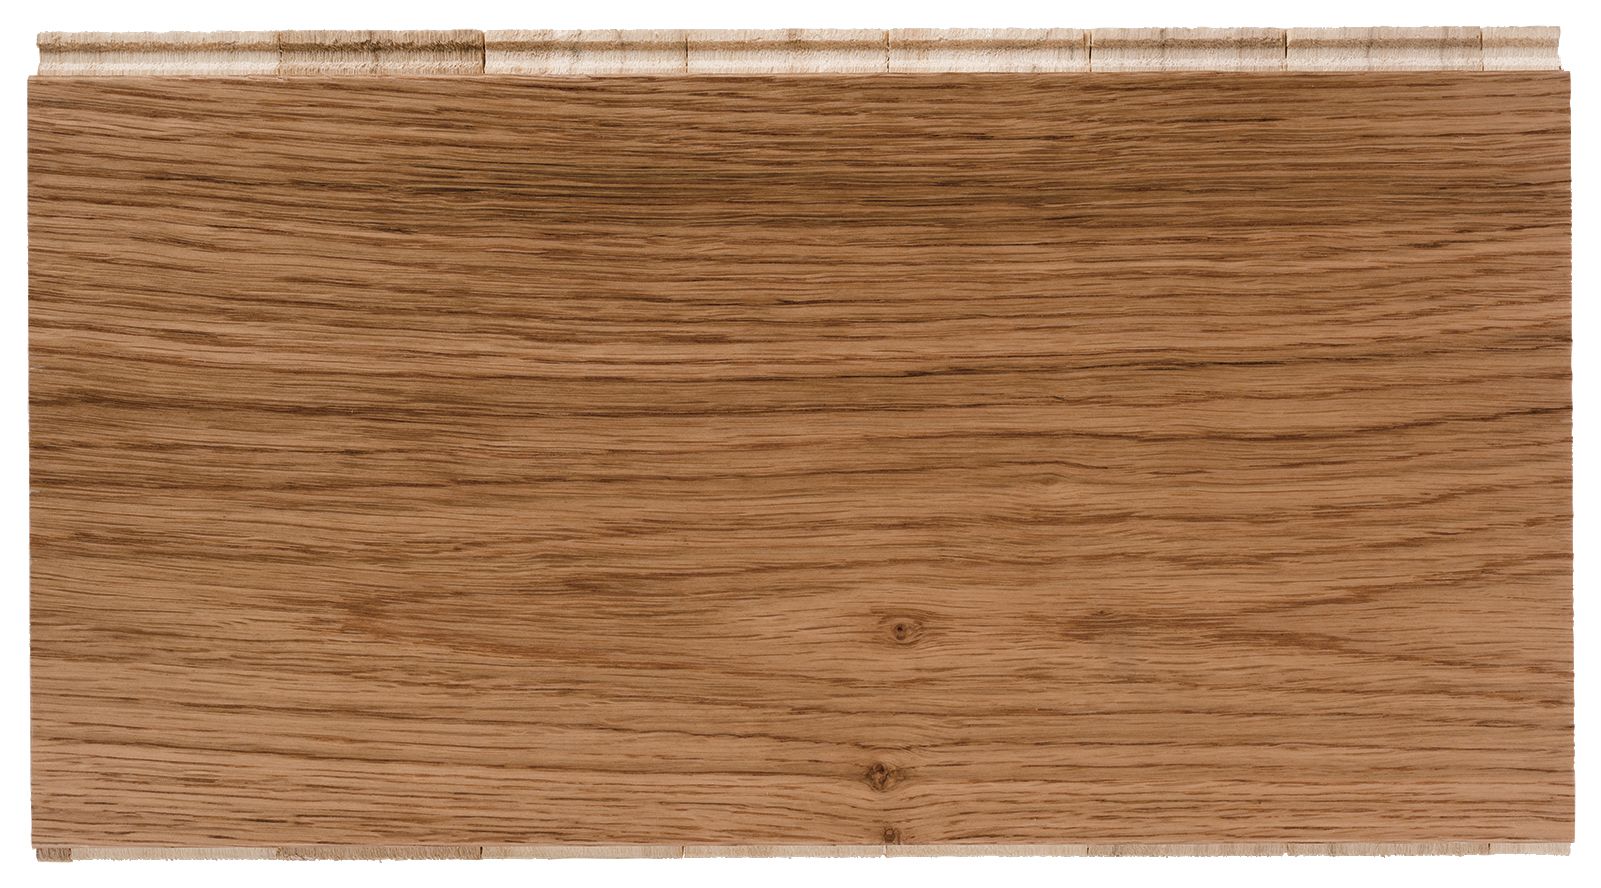 W by Woodpecker Farm Light Oak 14mm Engineered Wood Flooring - Sample